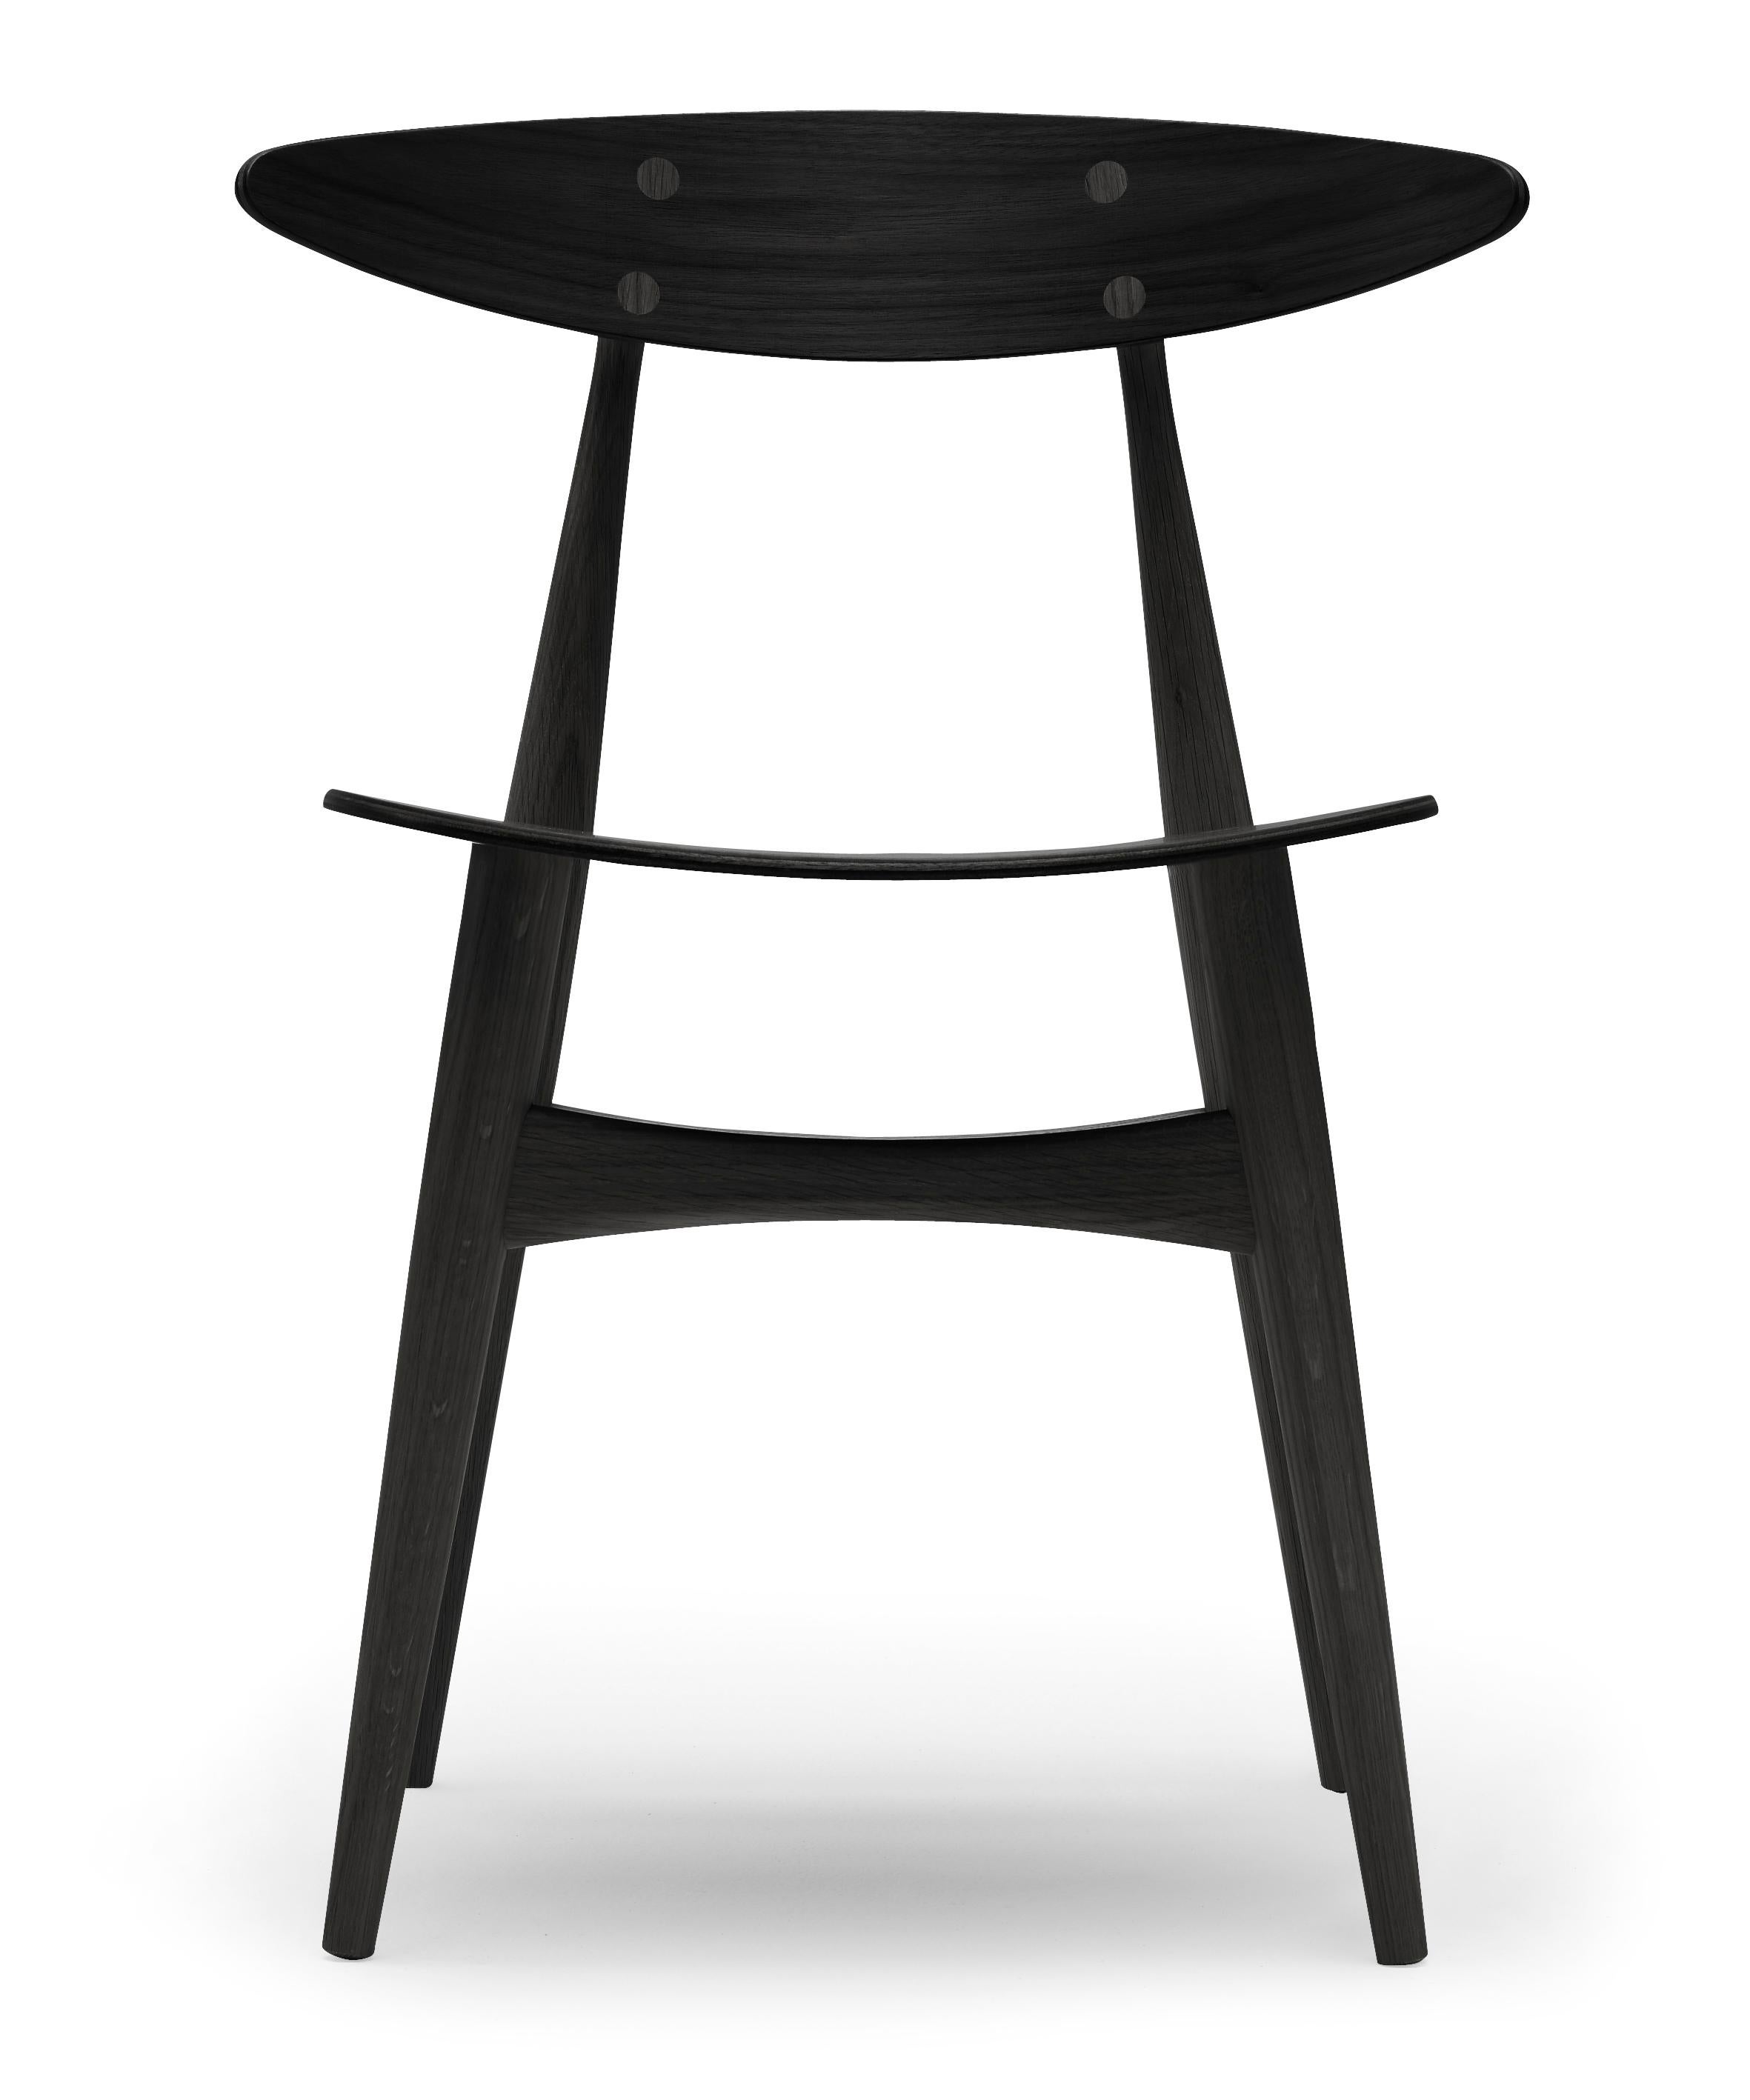 Black (Oak Painted blacks9000-N) CH33T Dining Chair in Wood by Hans J. Wegner